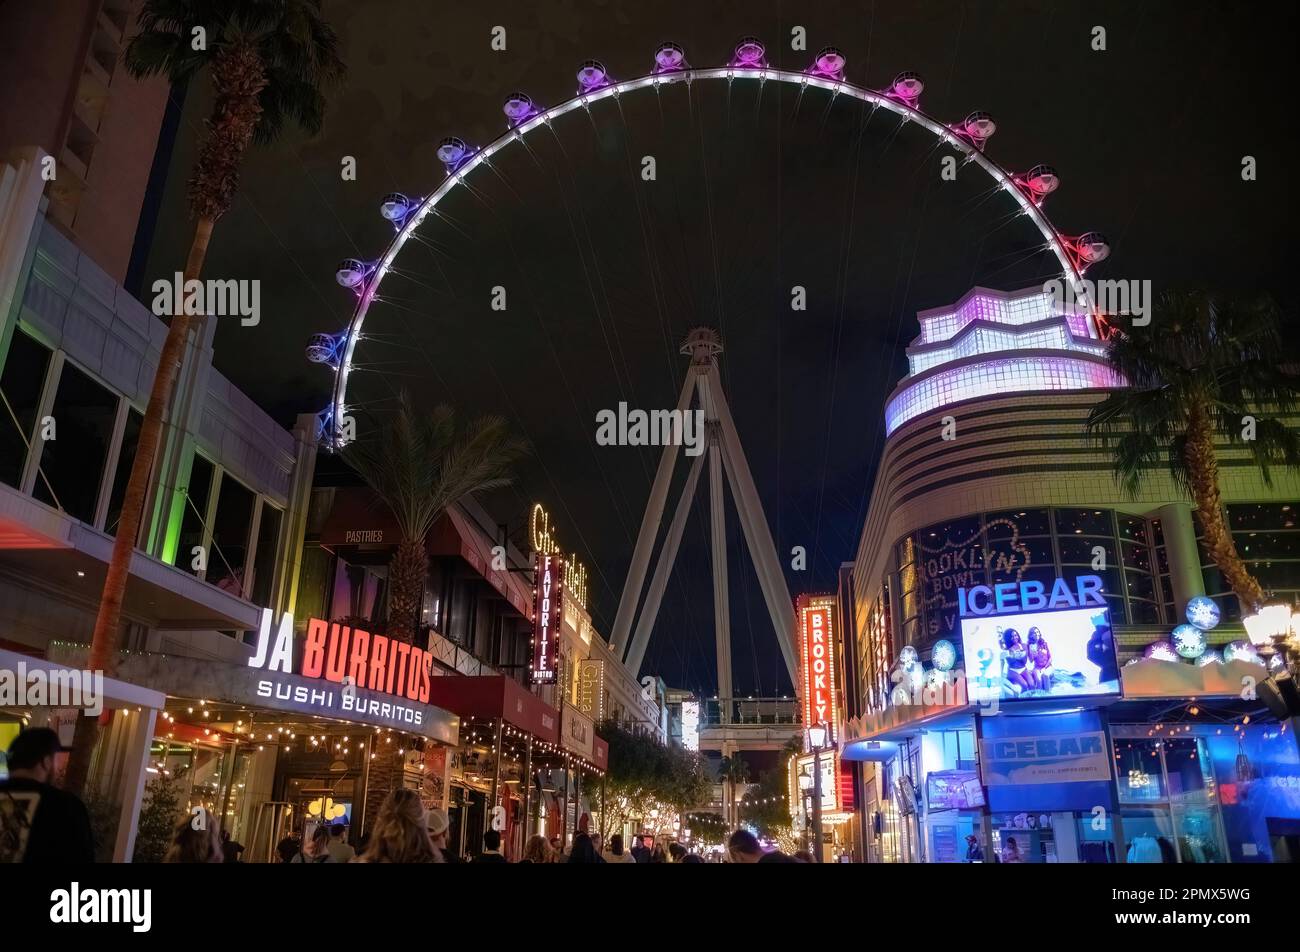 Unternehmen, die zum High Roller hinaufführen, einem riesigen Riesenrad mit 32 m hohen Höhen oder Passagierkabinen mit Platz für bis zu 40 Personen, für malerische Ausblicke auf Las Vegas. Stockfoto